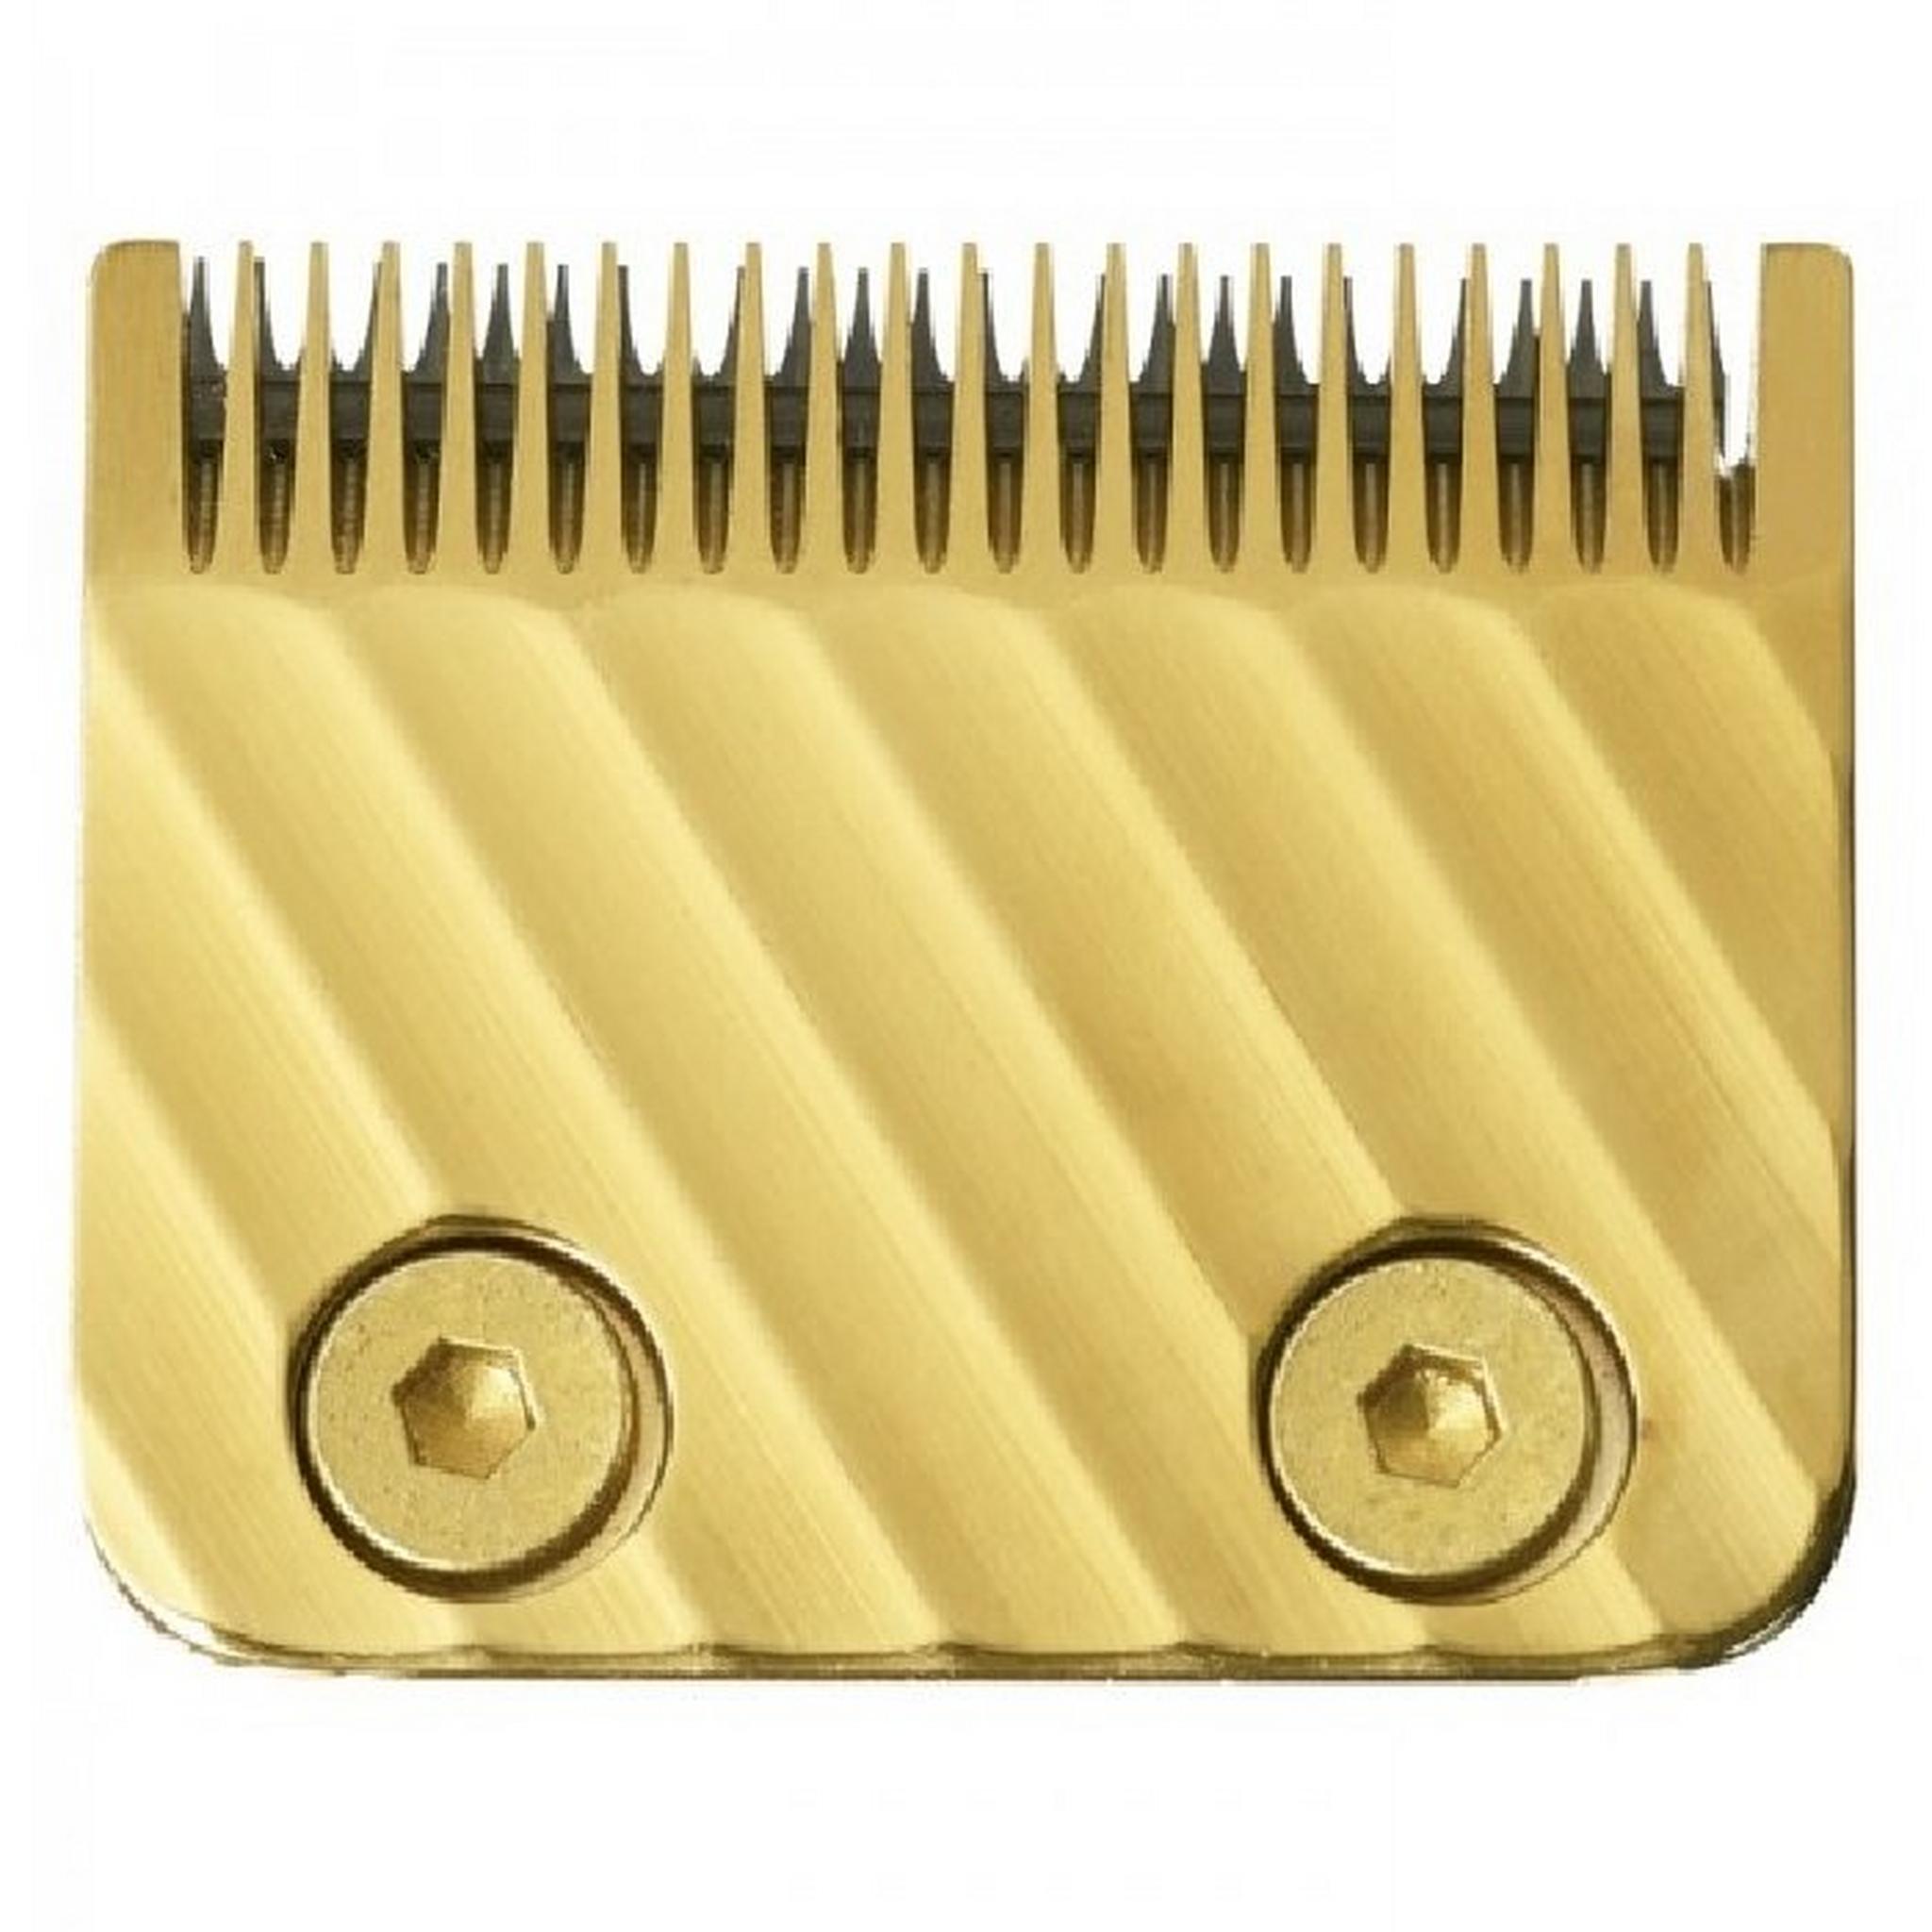 ماكينة حلاقة الشعر بيبي ليس برو 4 آرتستس - ذهبي (FX8700GE)